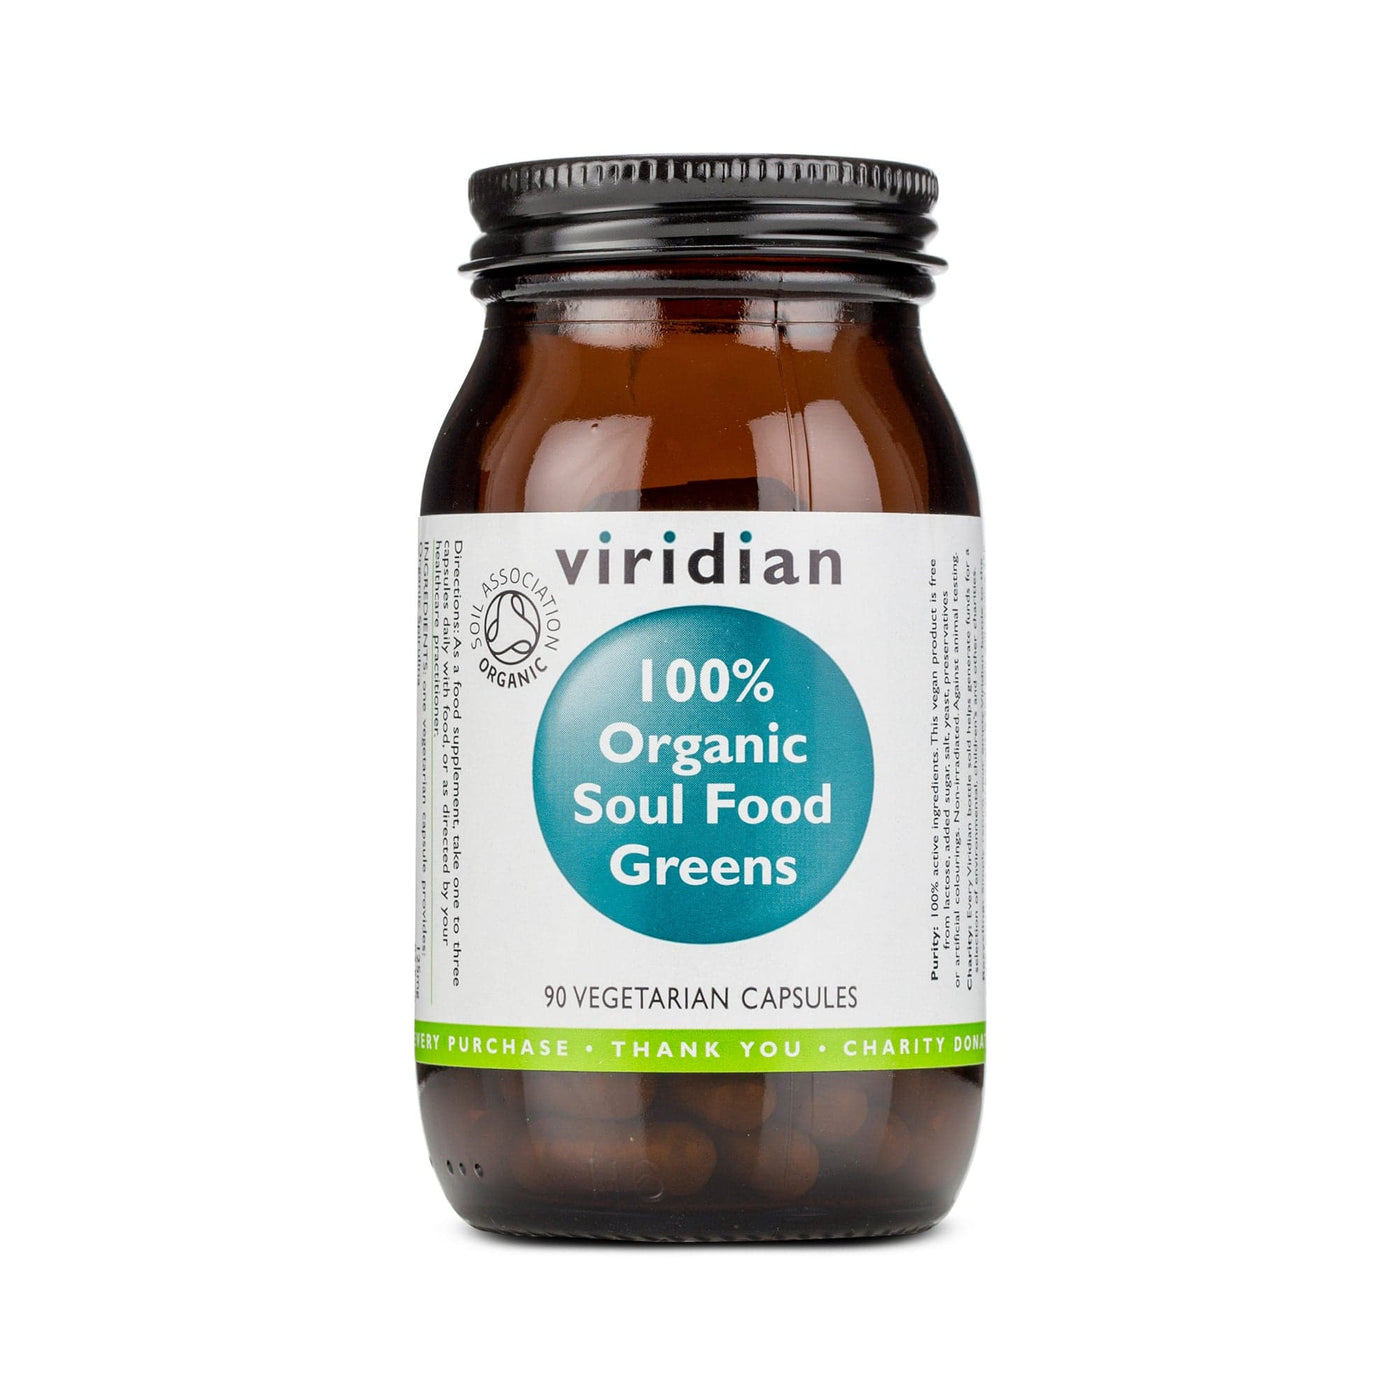 Neal's Yard Remedies Viridian Organic Soul Food Greens Veg Caps - 90 Capsules